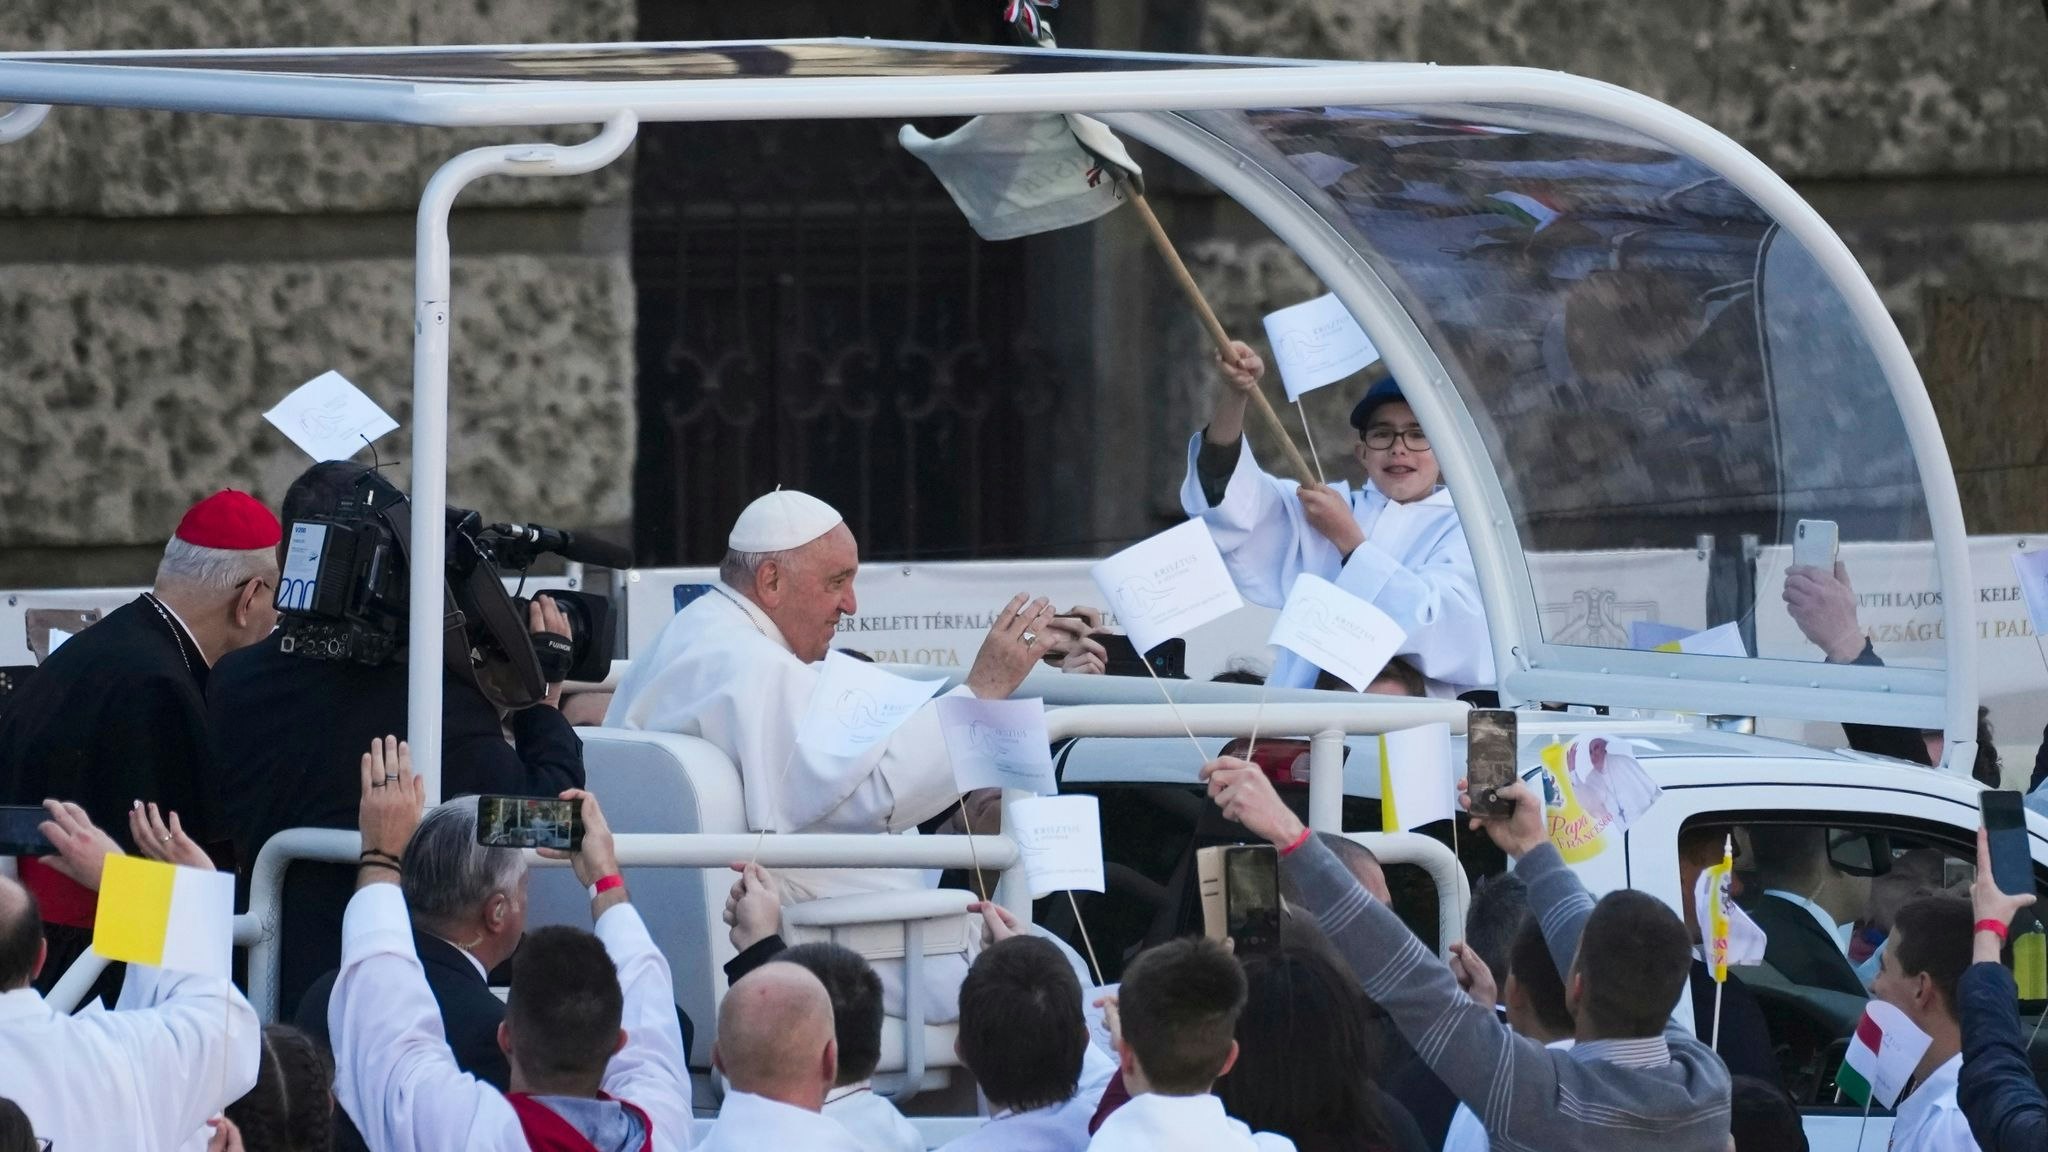 Unter Jubel und Applaus wurde Papst Franziskus in seinem berühmten Papamobil durch die Reihen der Besucher und Gläubigen gefahren. Foto: dpa/Medichini